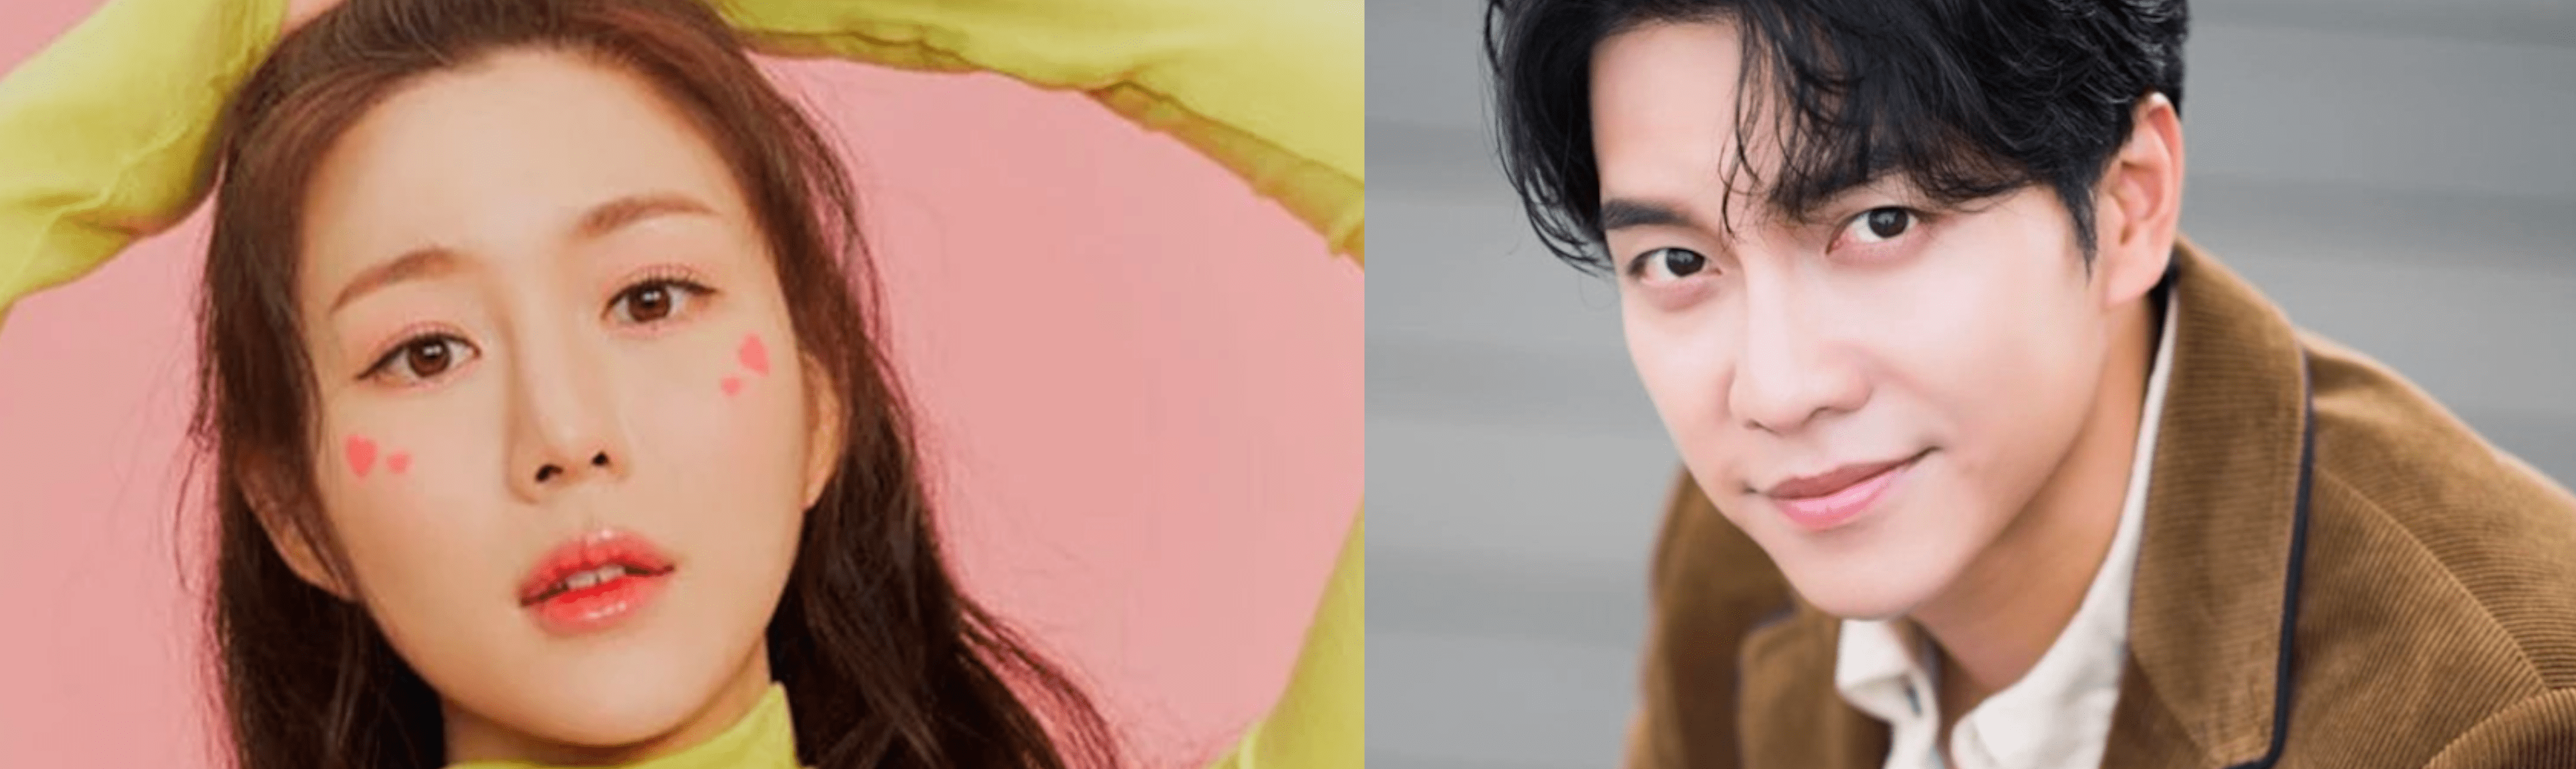 Lee Seung Gi e Lee Da In annunciano il loro fidanzamento! — Nolae